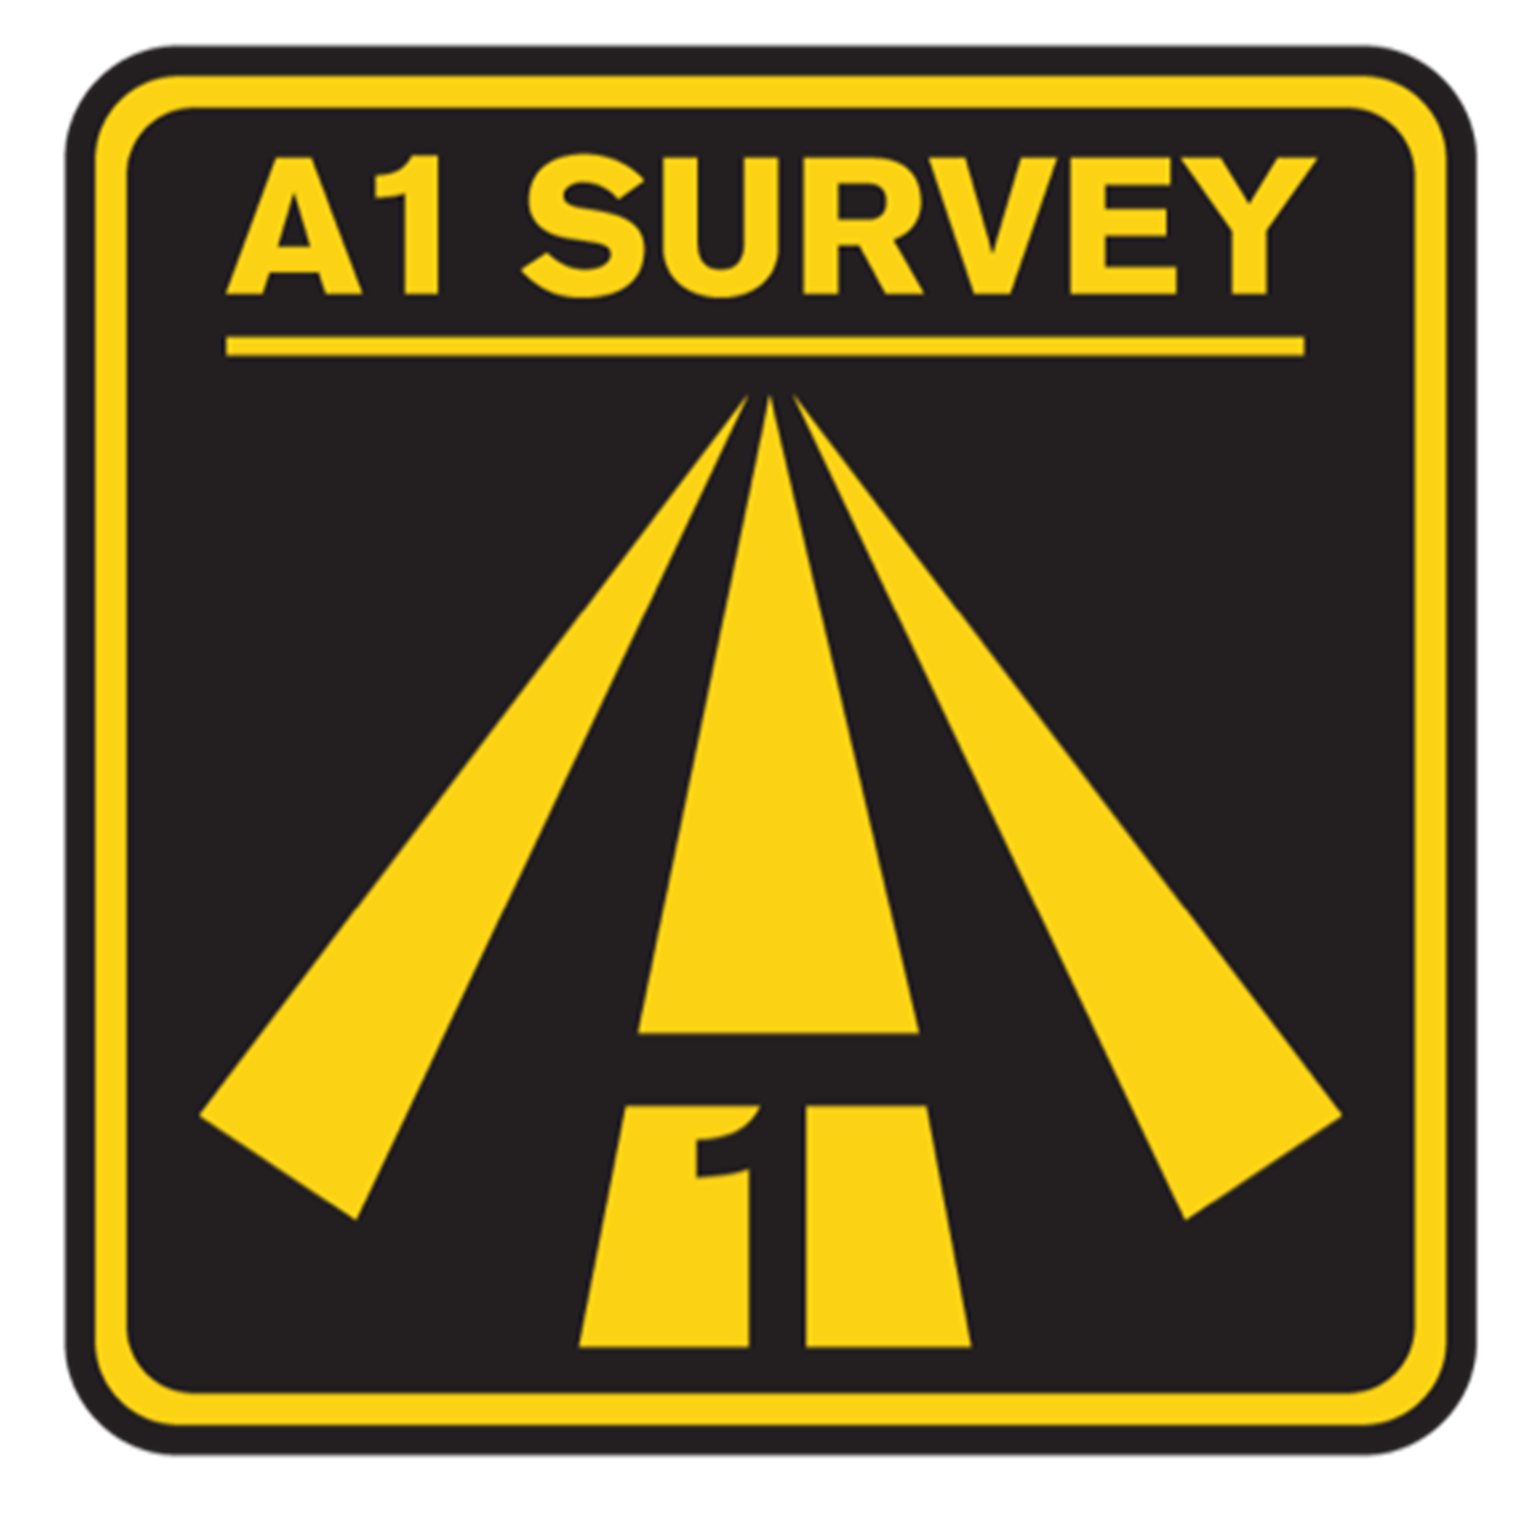 A1 Survey Ltd